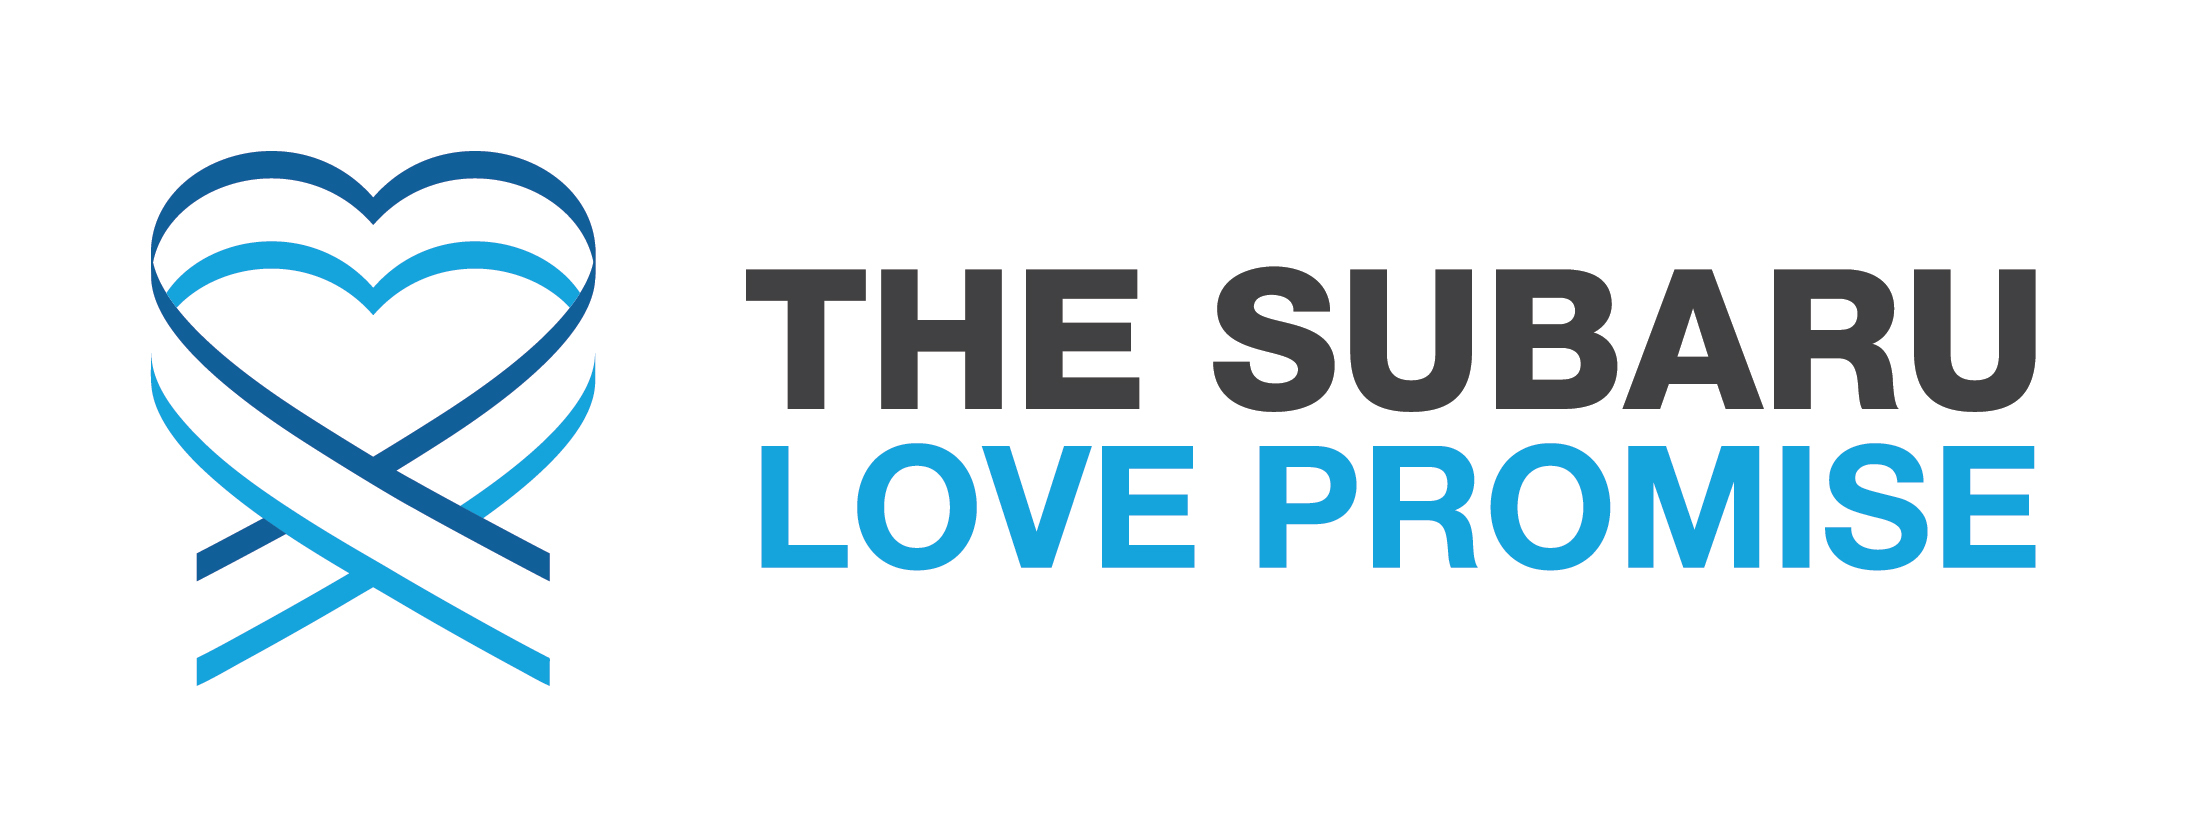 Subaru love promise logo